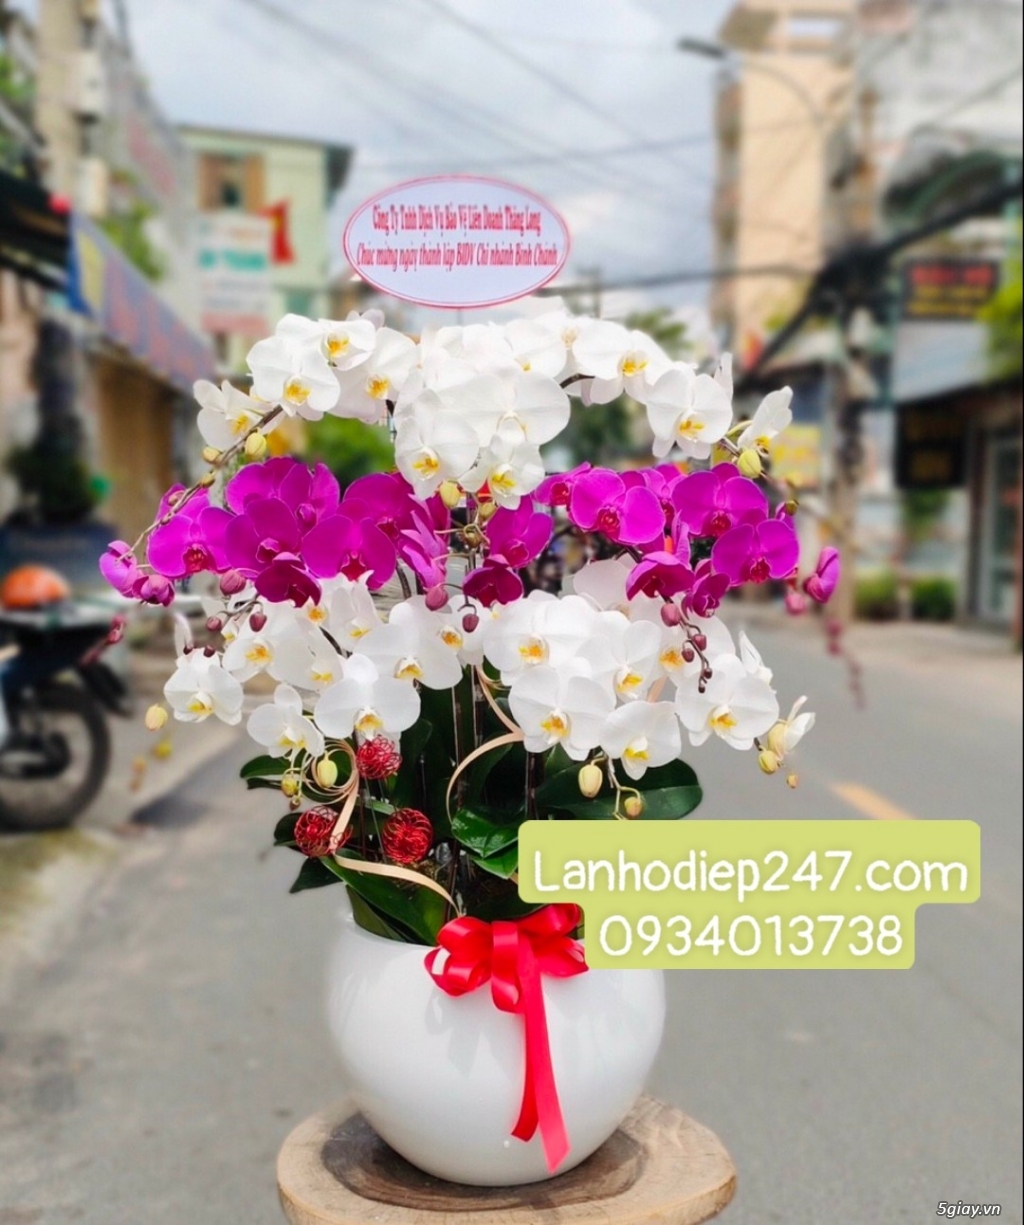 Shop hoa tươi Lan Hồ Điệp tại Thuận An Bình Dương 0934013738 - 14